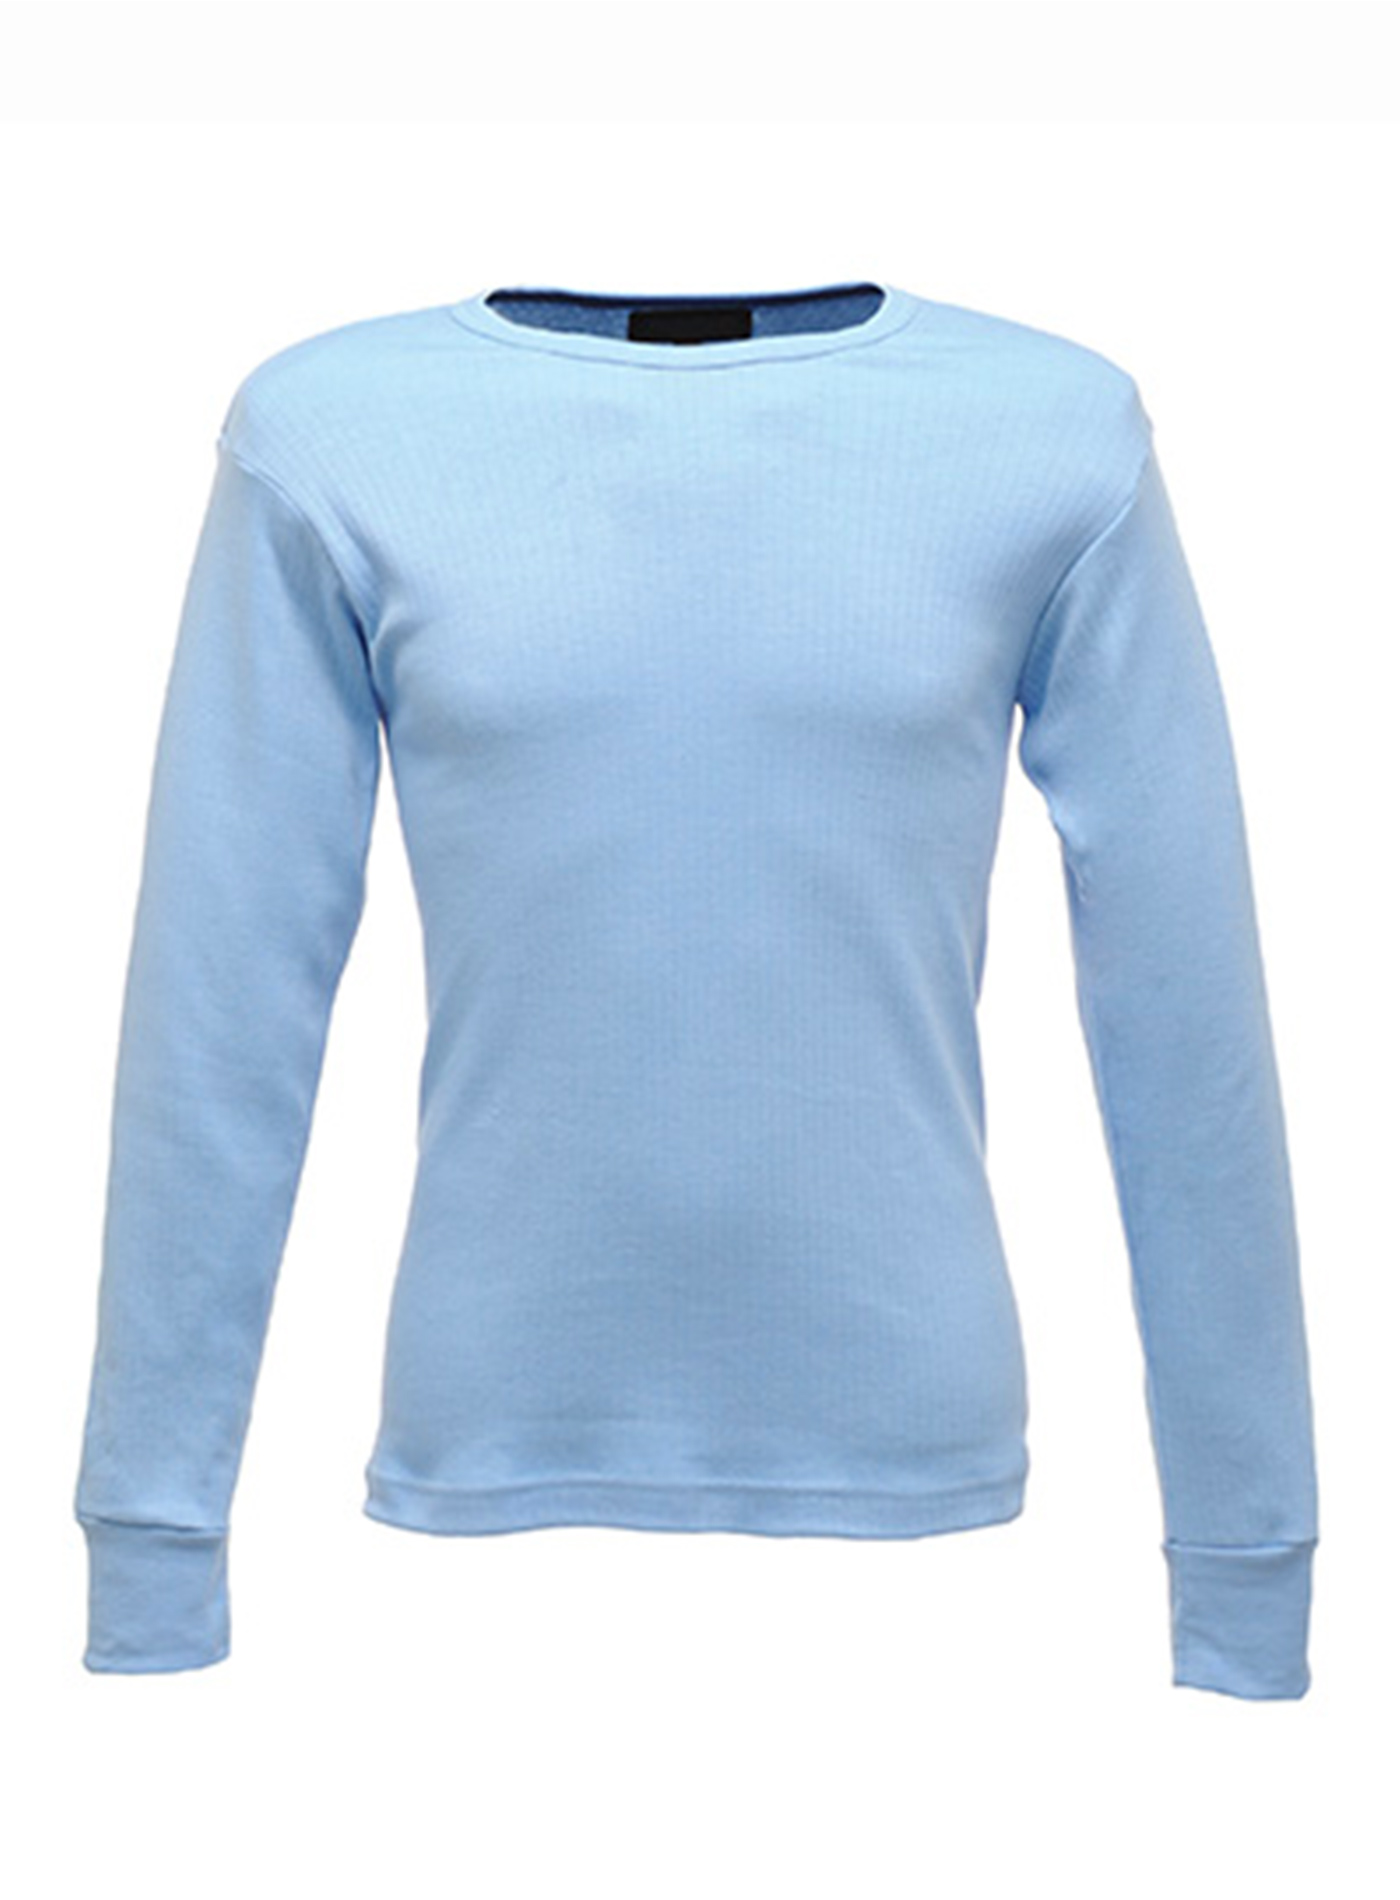 Pánské tričko Thermal - Modrá L